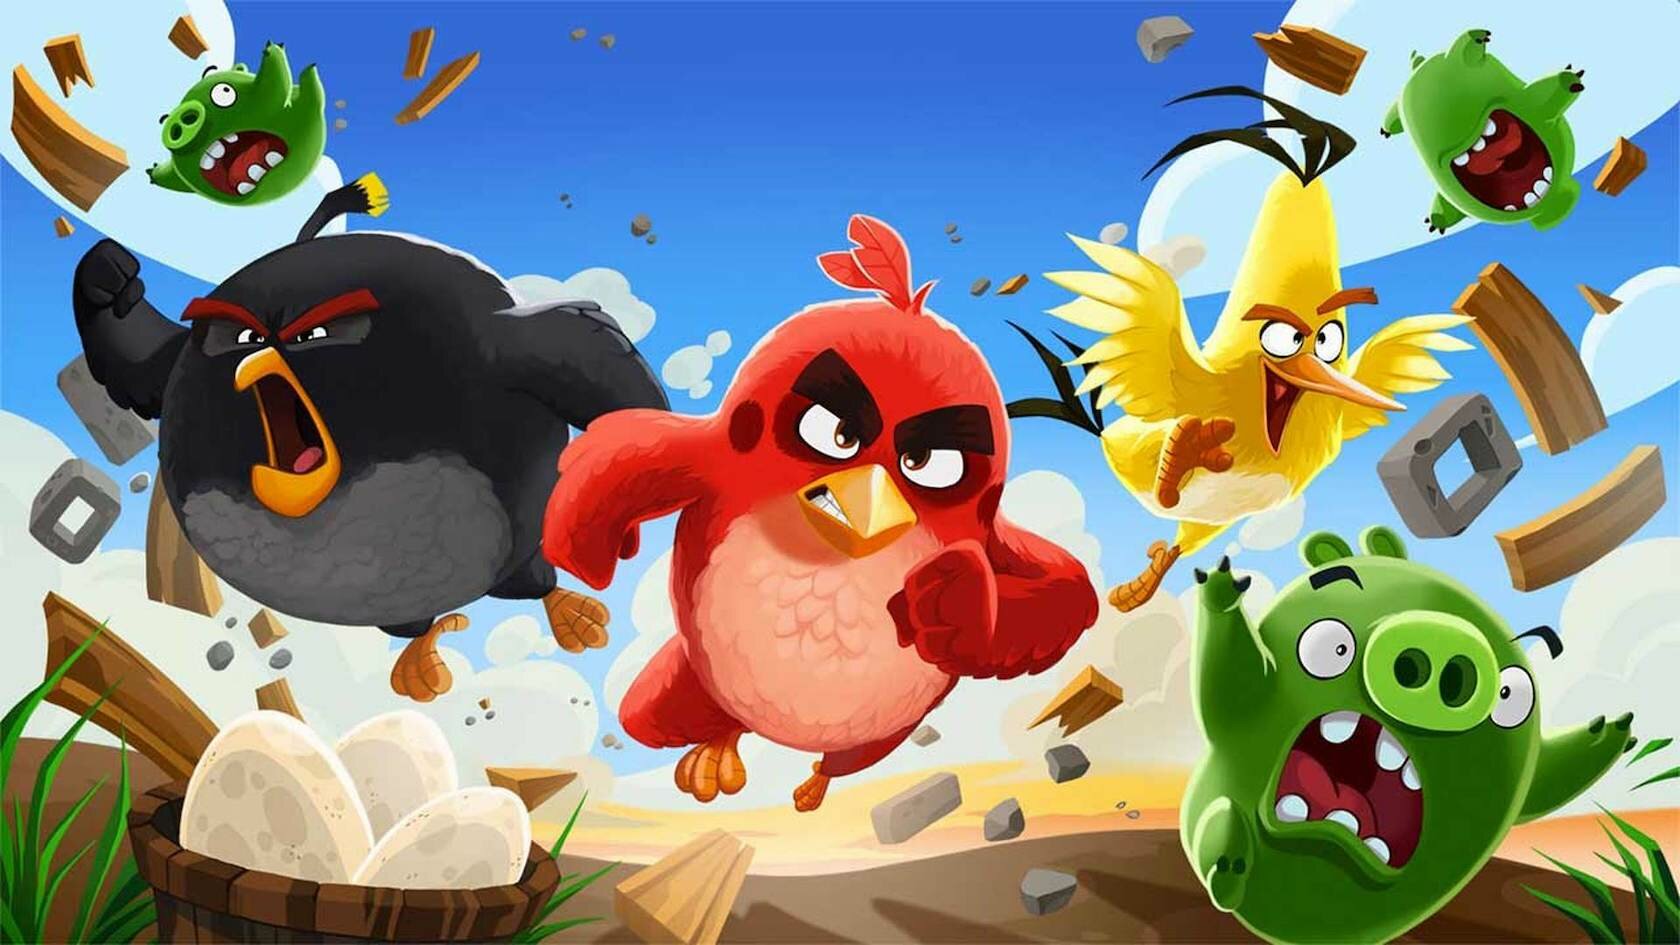 Сделай сам: Как сделать пирожные Angry Birds (15 минут)